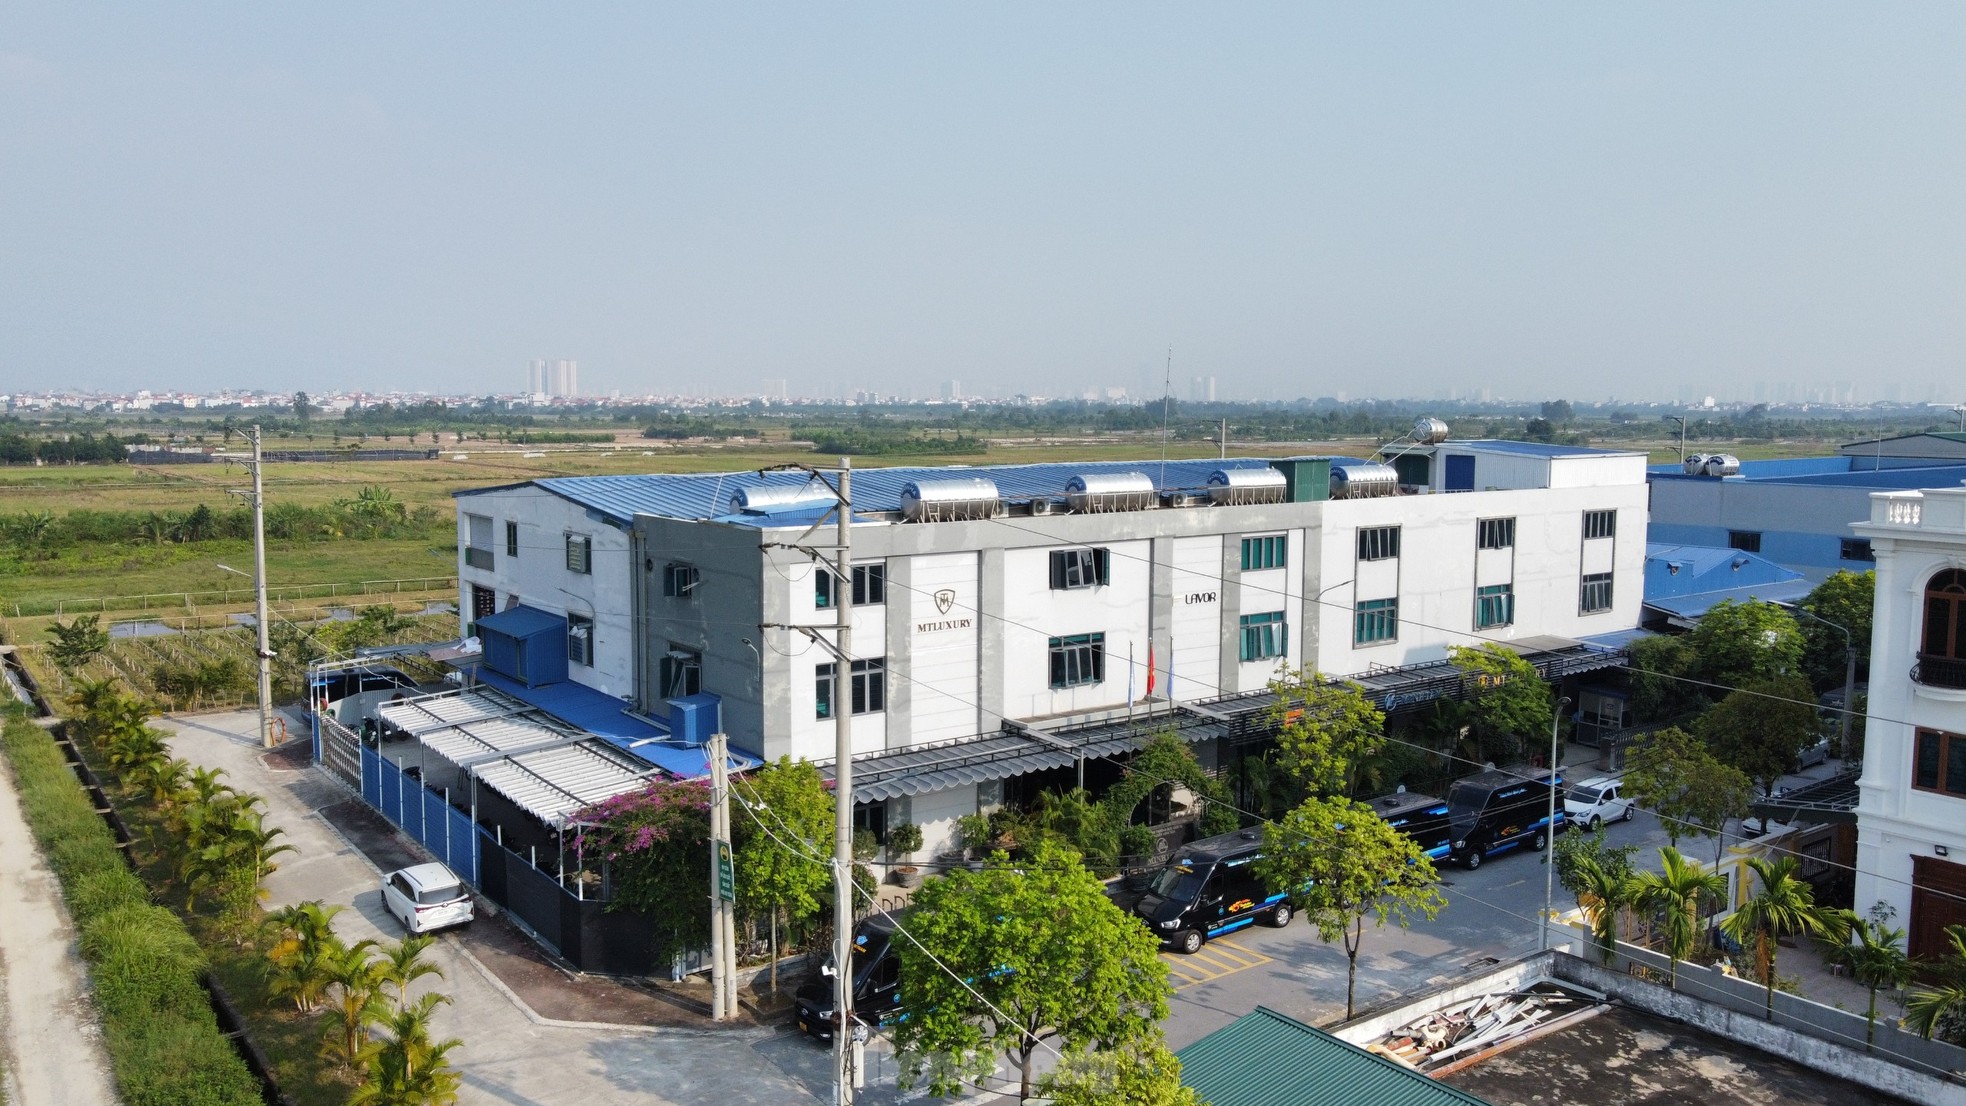 Cận cảnh loạt biệt thự 'mọc' trong cụm công nghiệp làng nghề ở Hà Nội - Ảnh 3.